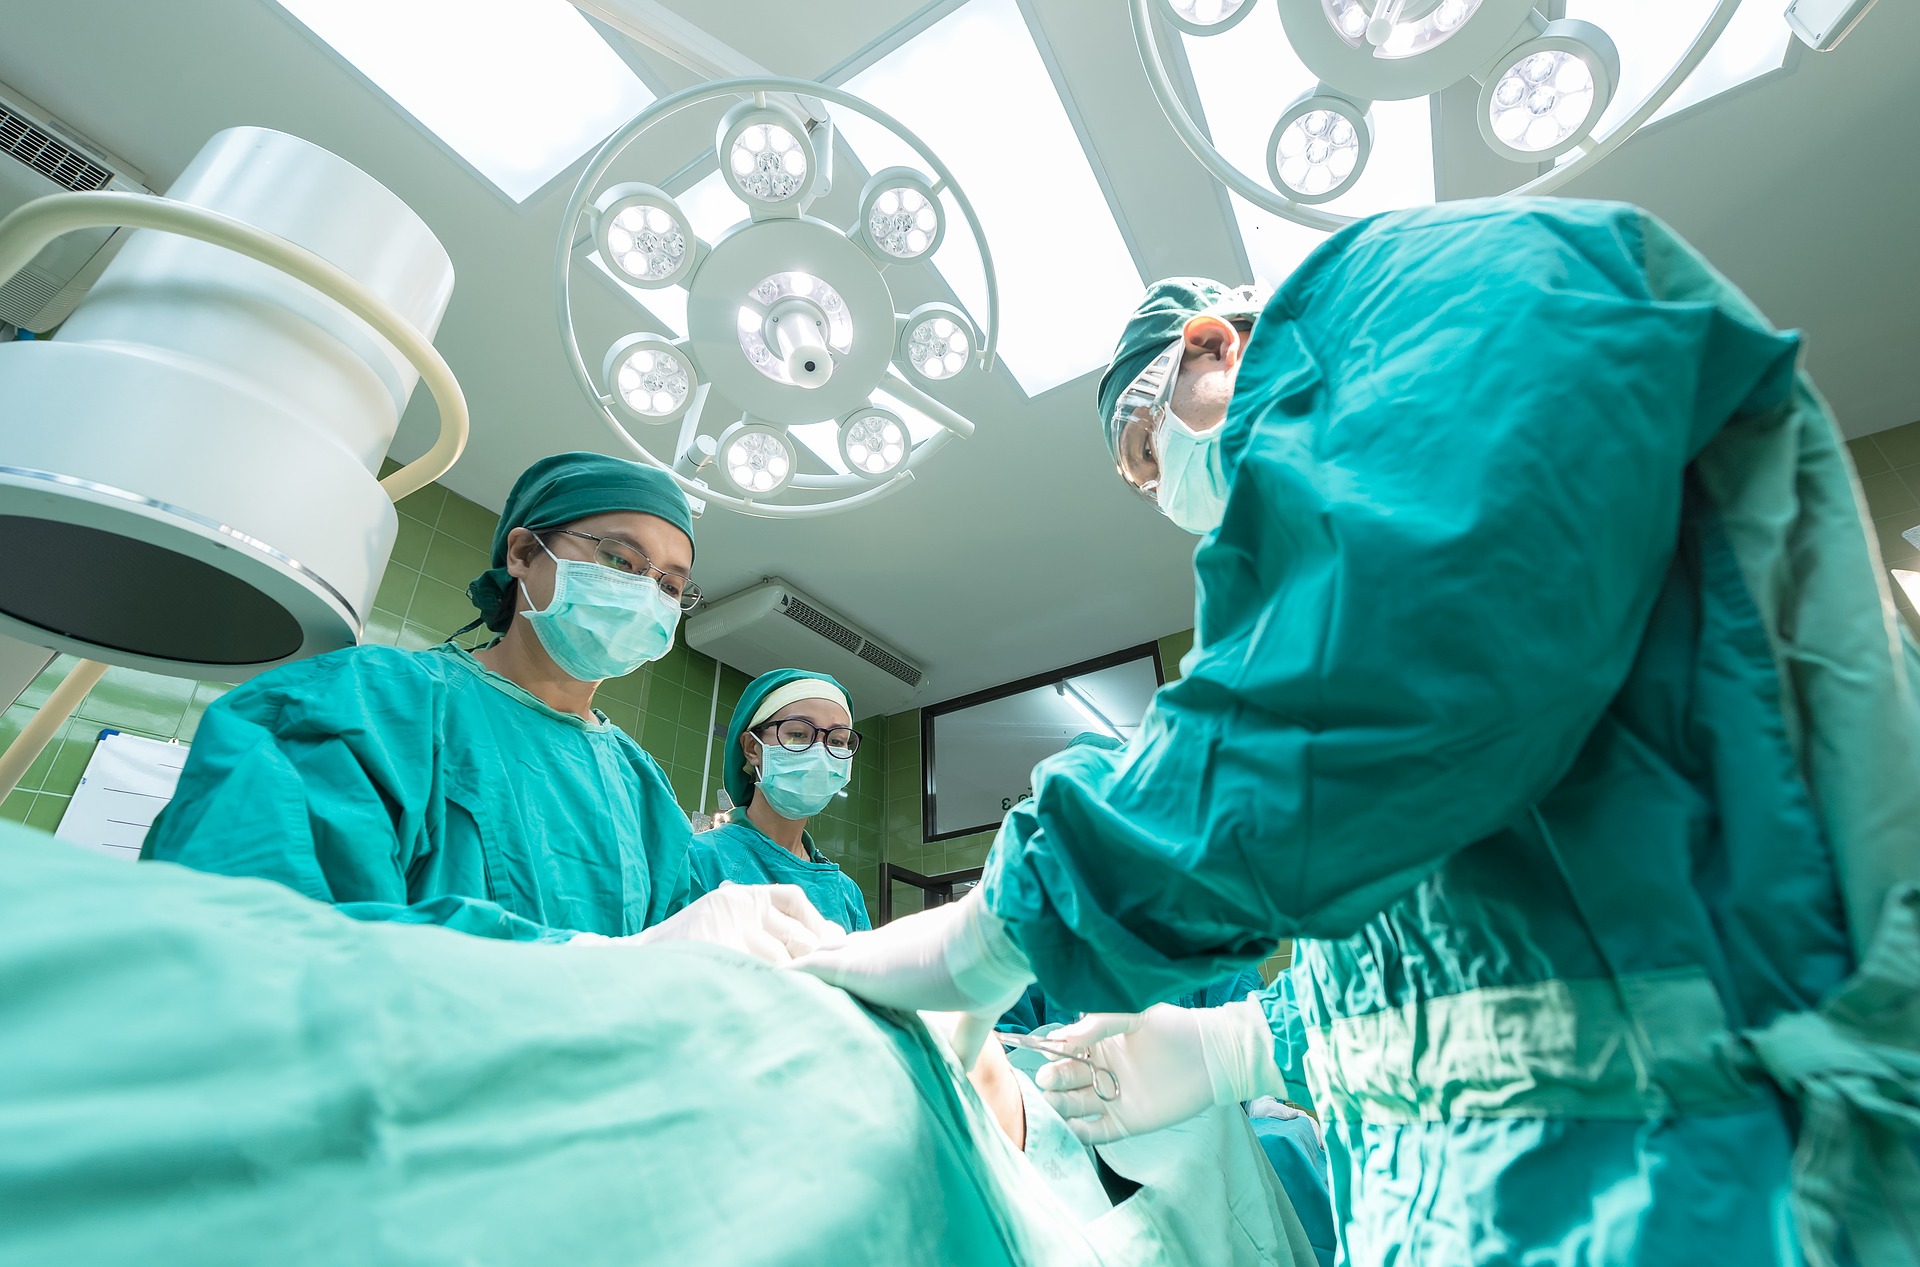 Ratownicy medyczni z Chełmna zaatakowani przez pacjenta